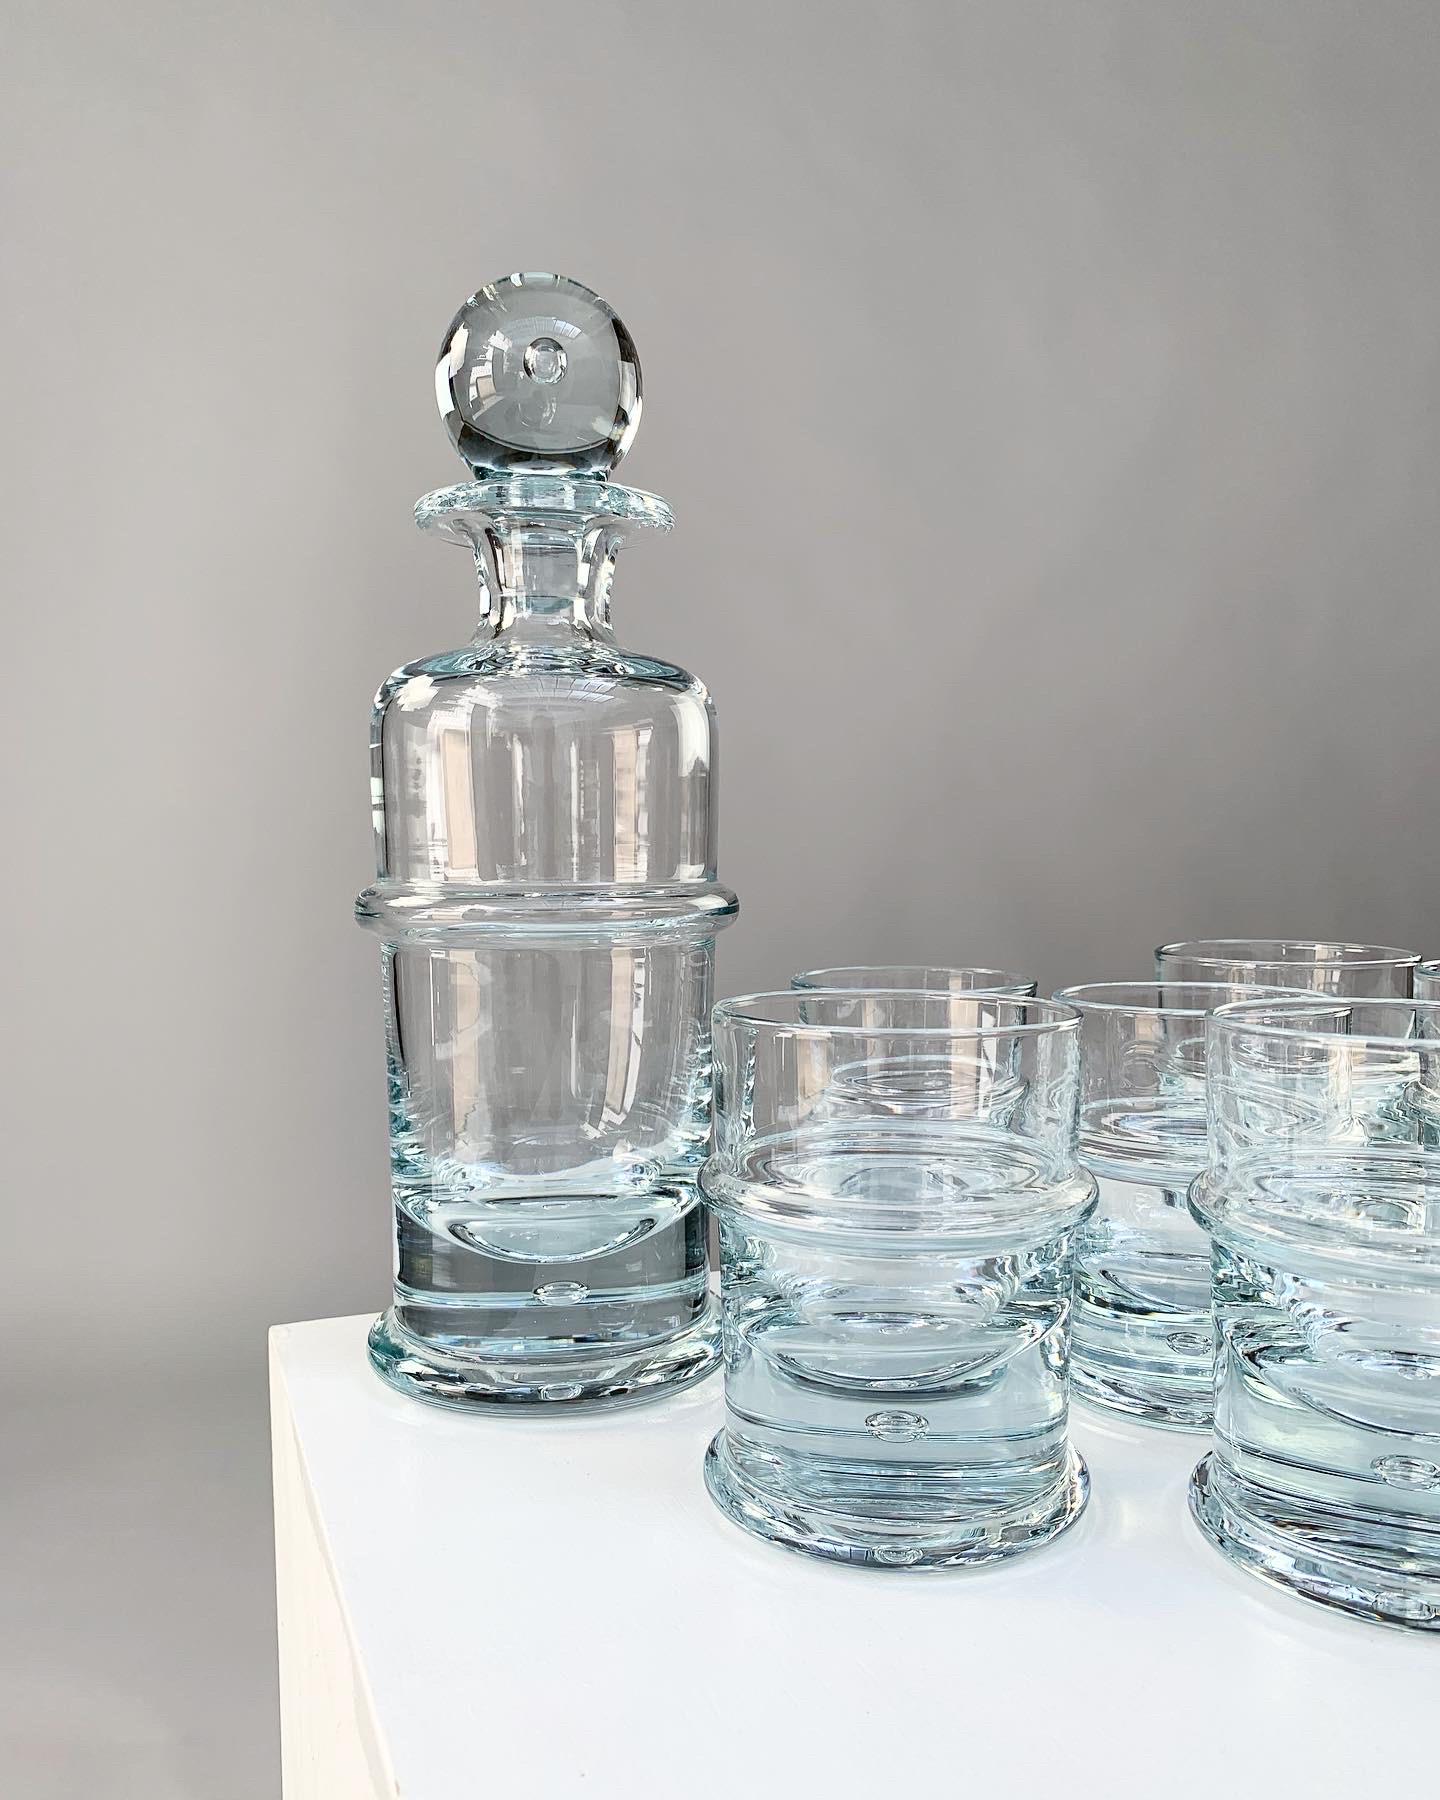 Danish Holmegaard Crystal Glass Decanter Bottle & Tumbler Glasses Regiment Sidse Werner